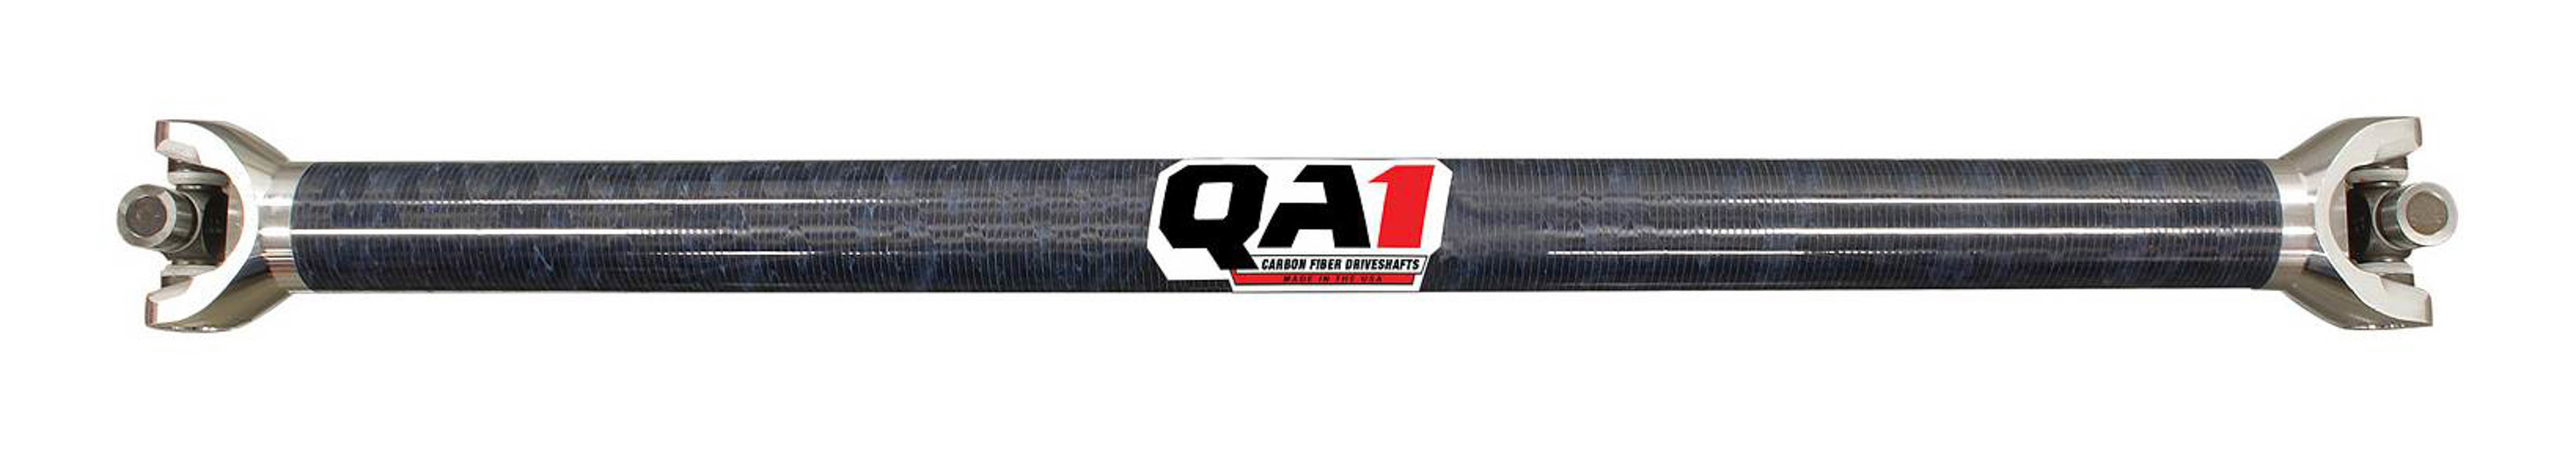 QA1 JJ-12214 Drive Shaft, Dirt Modified, 31.5 in Long, 2.25 in OD, 1310 U-Joints, 8 in Slip Yoke, Carbon Fiber, Universal, Each